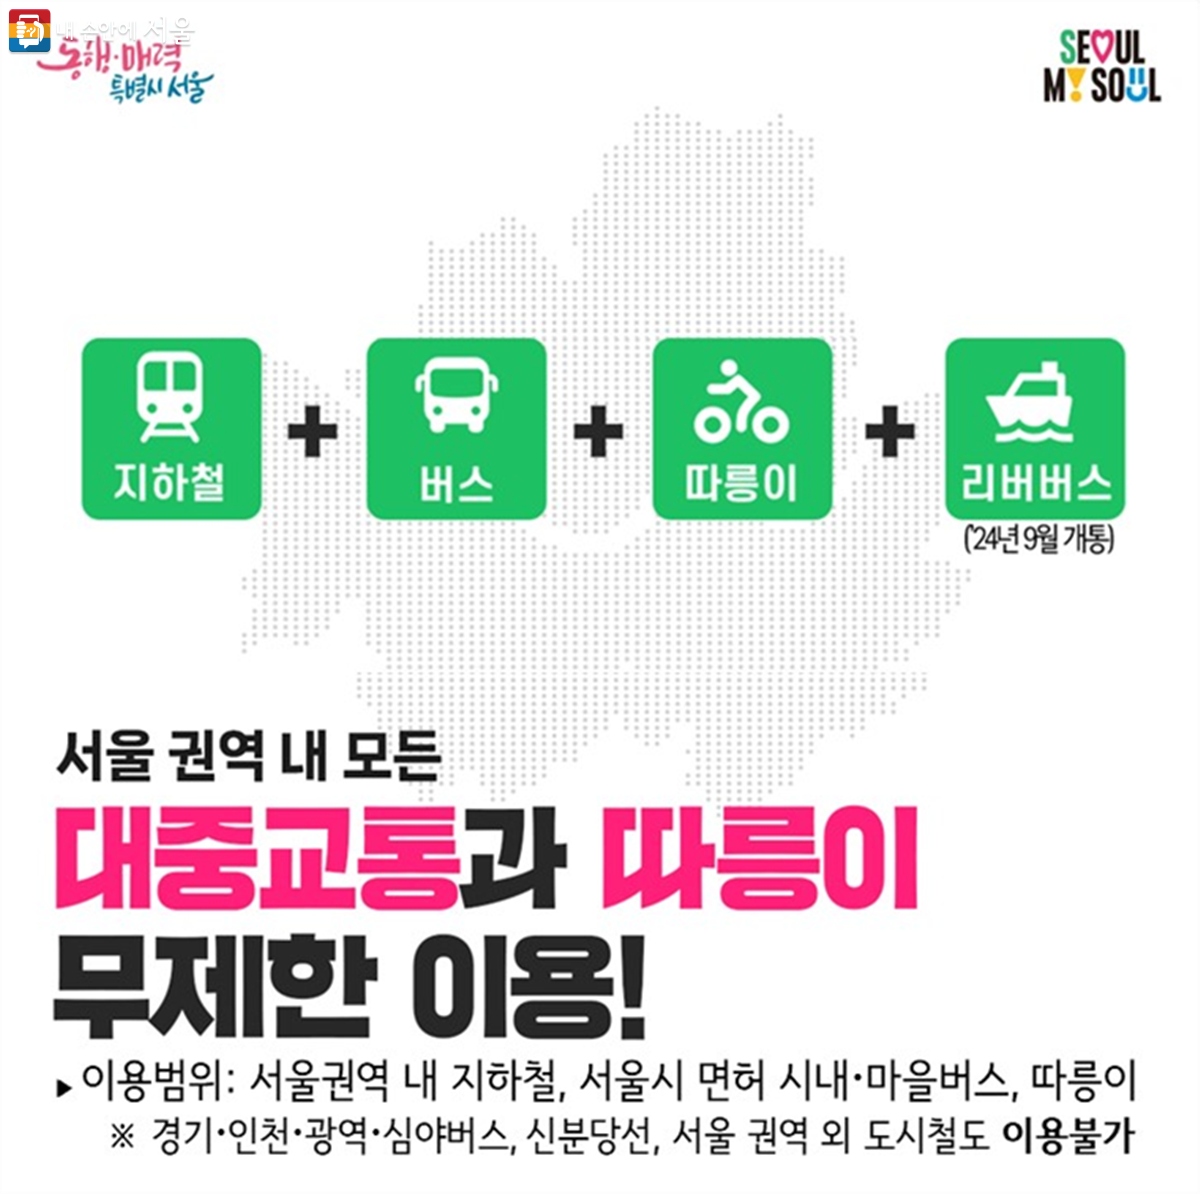 기후동행카드로 서울 권역 내 모든 대중교통과 따릉이를 무제한 이용할 수 있다. ©서울시